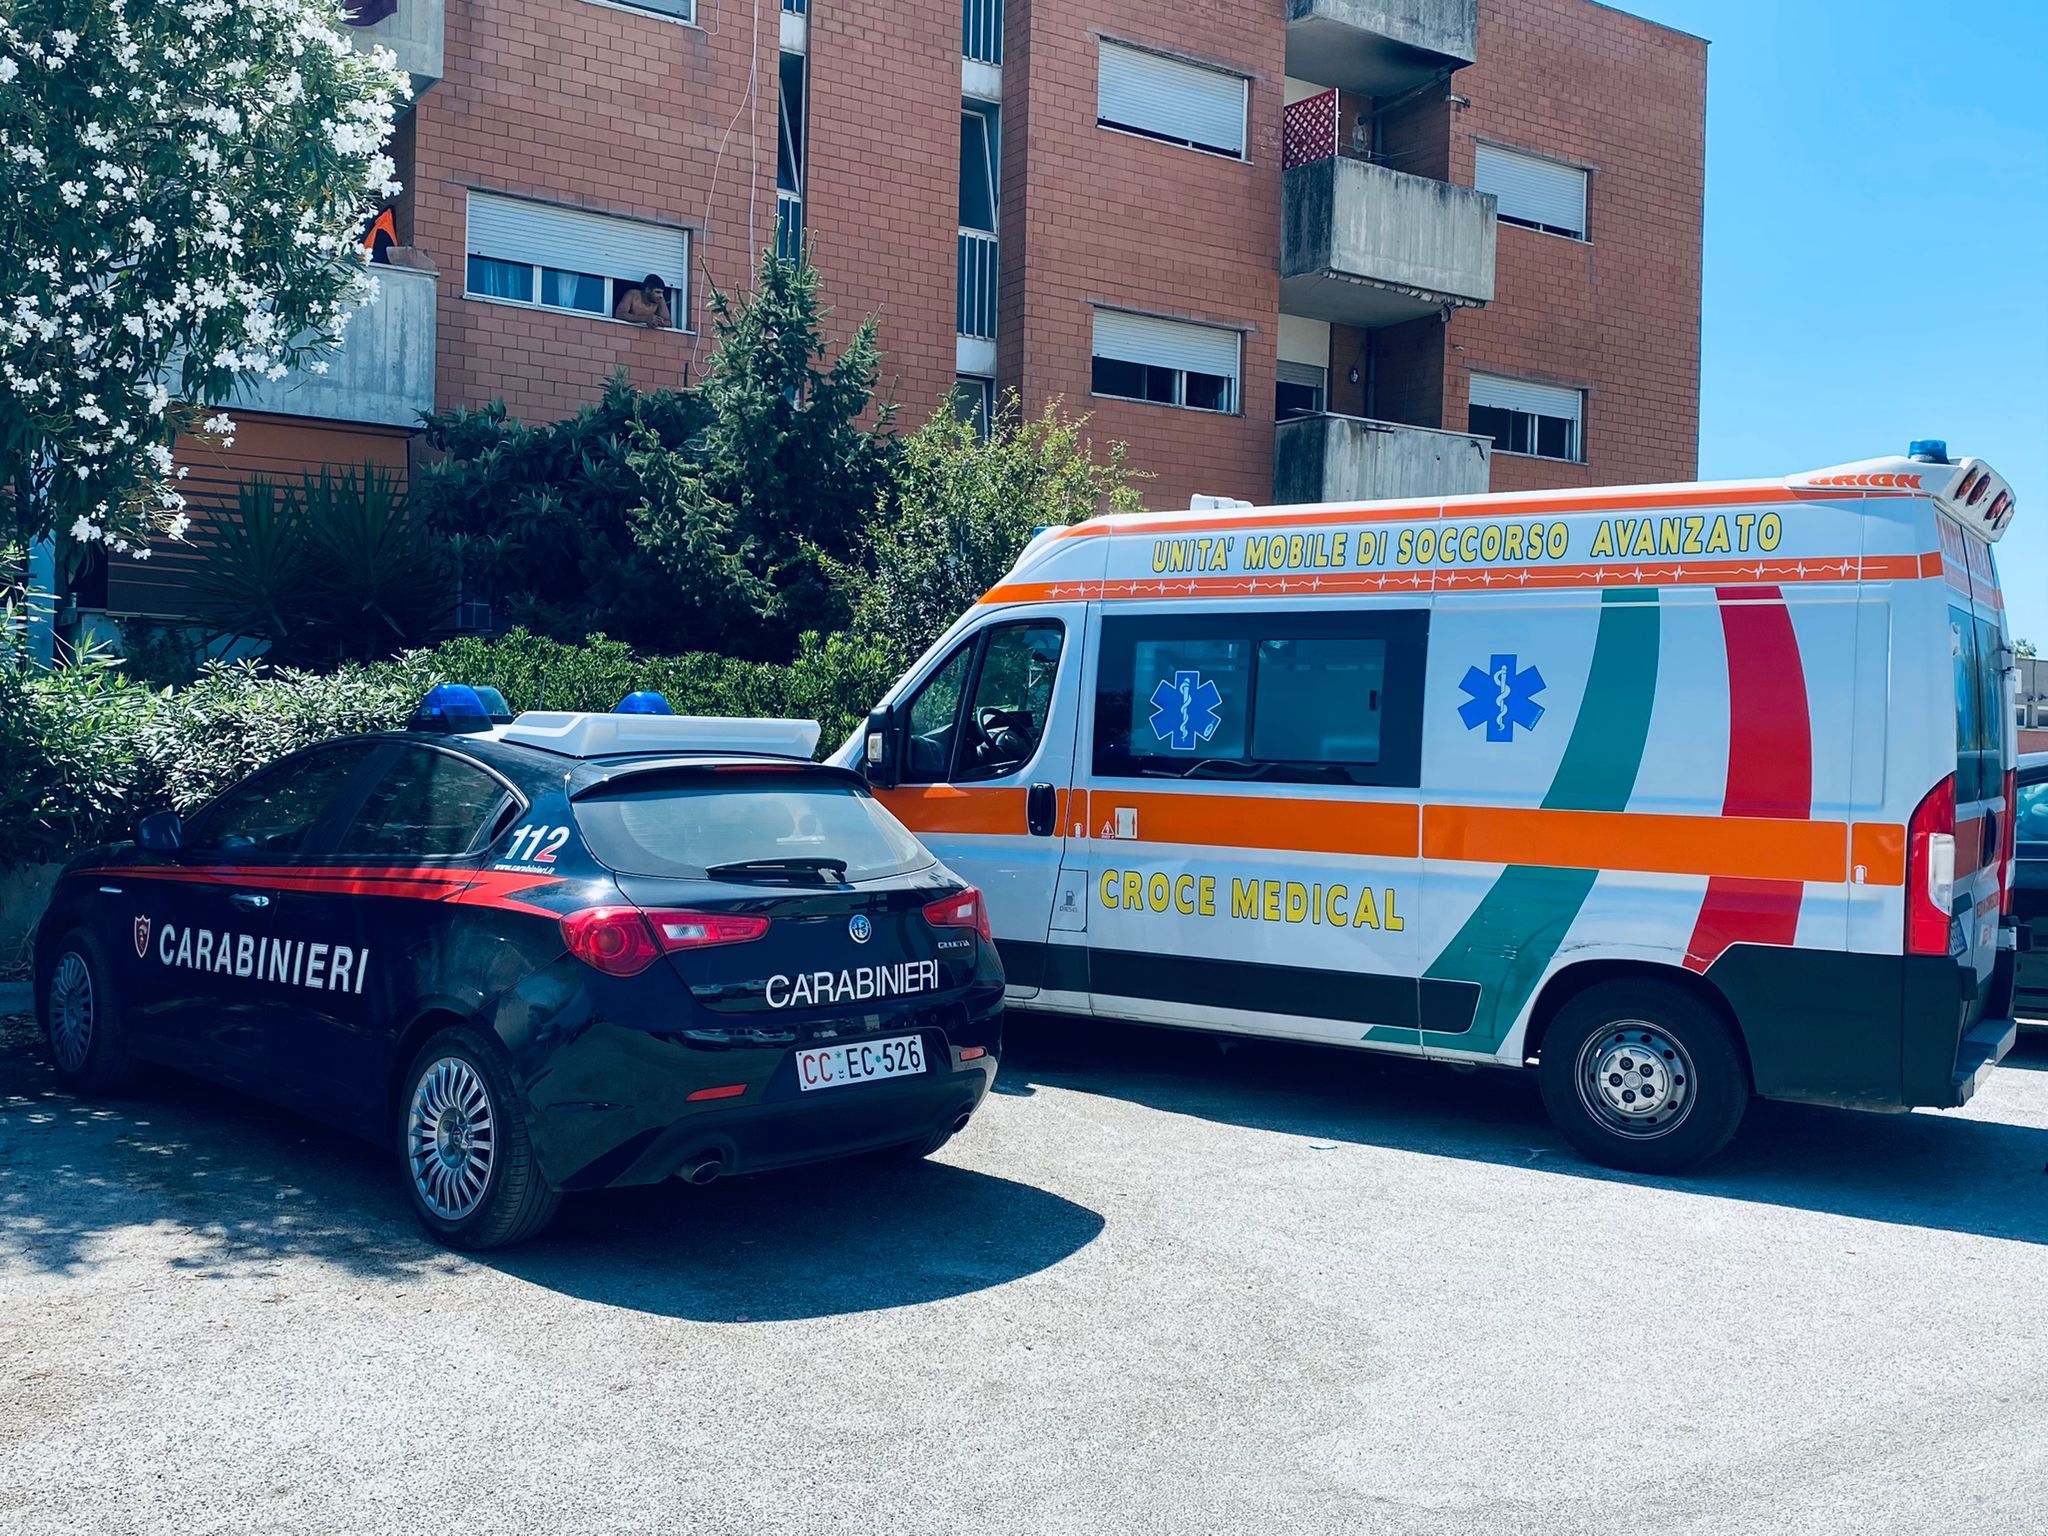 Carabinieri ambulanza per l'arresto dell'uomo violento a Roma maltrattamenti verso la ex